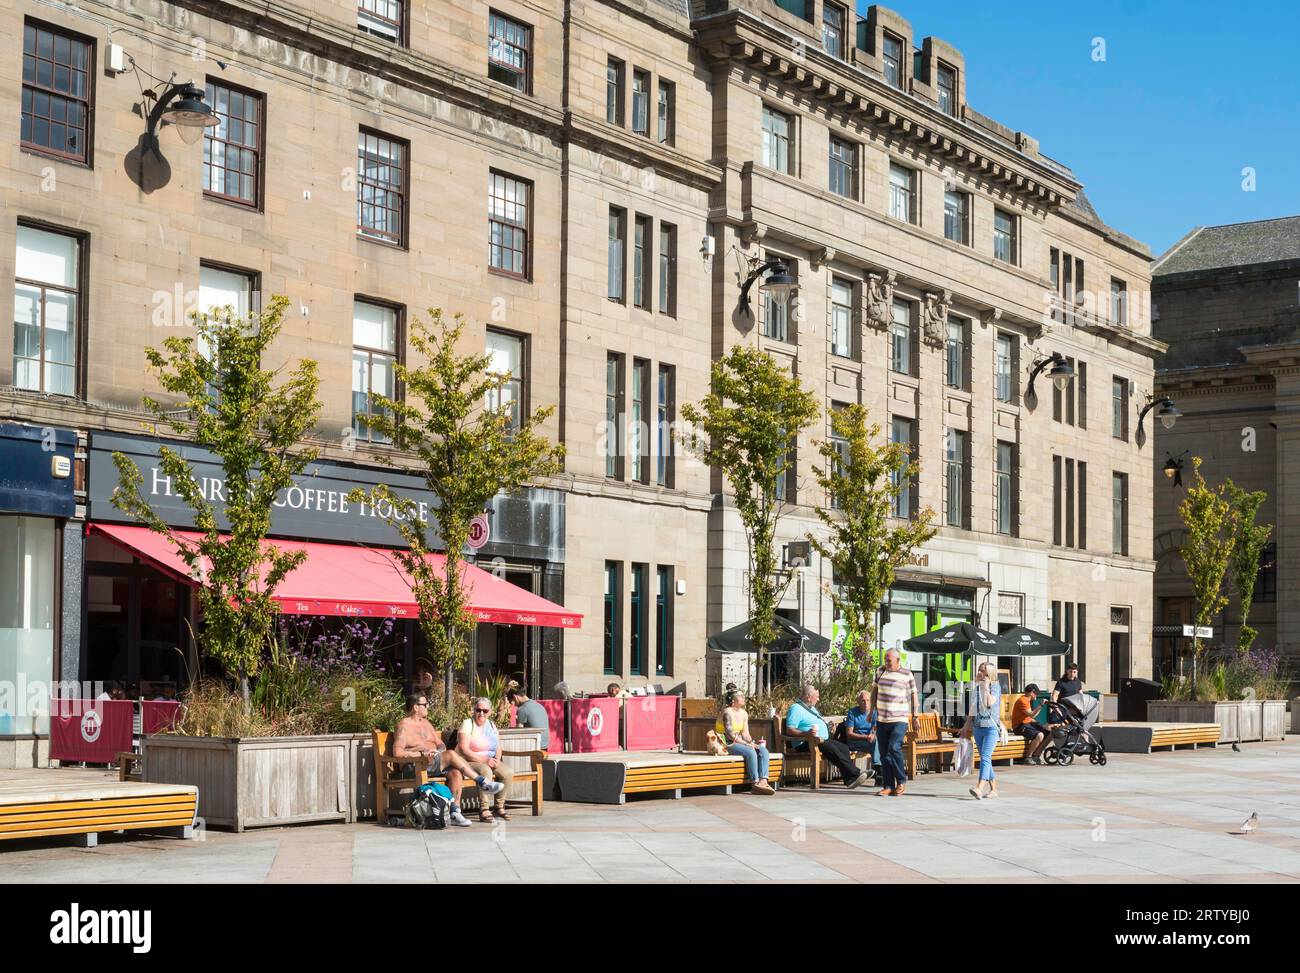 Persone sedute al sole. City Square, Dundee, Scozia, Regno Unito Foto Stock